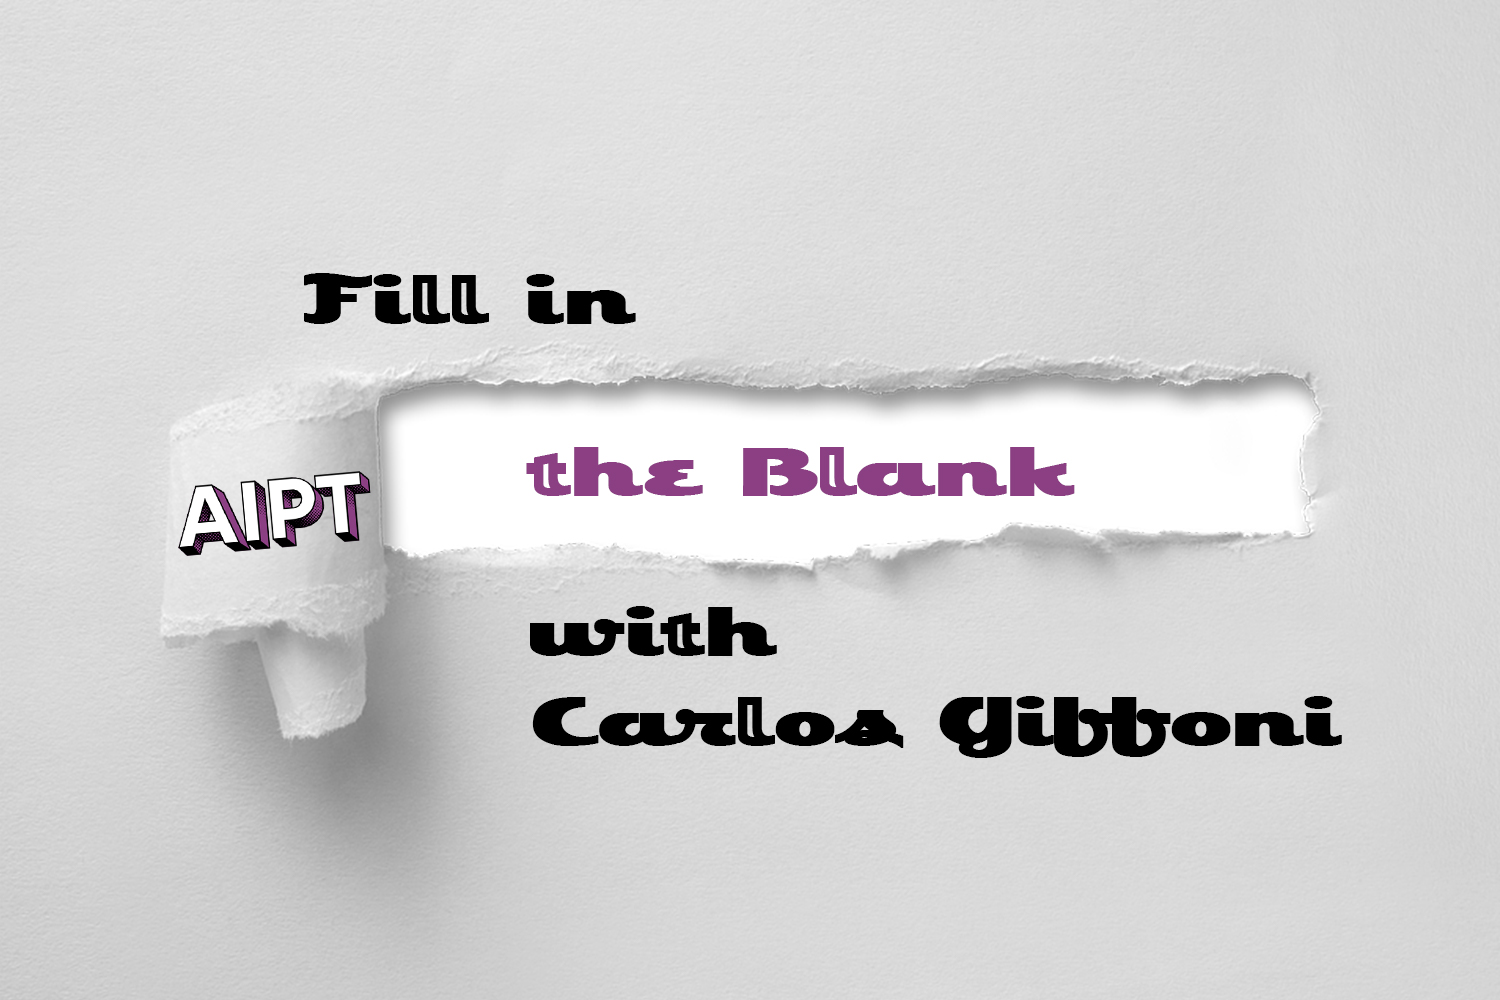 Fill in the Blank: Carlos Giffoni